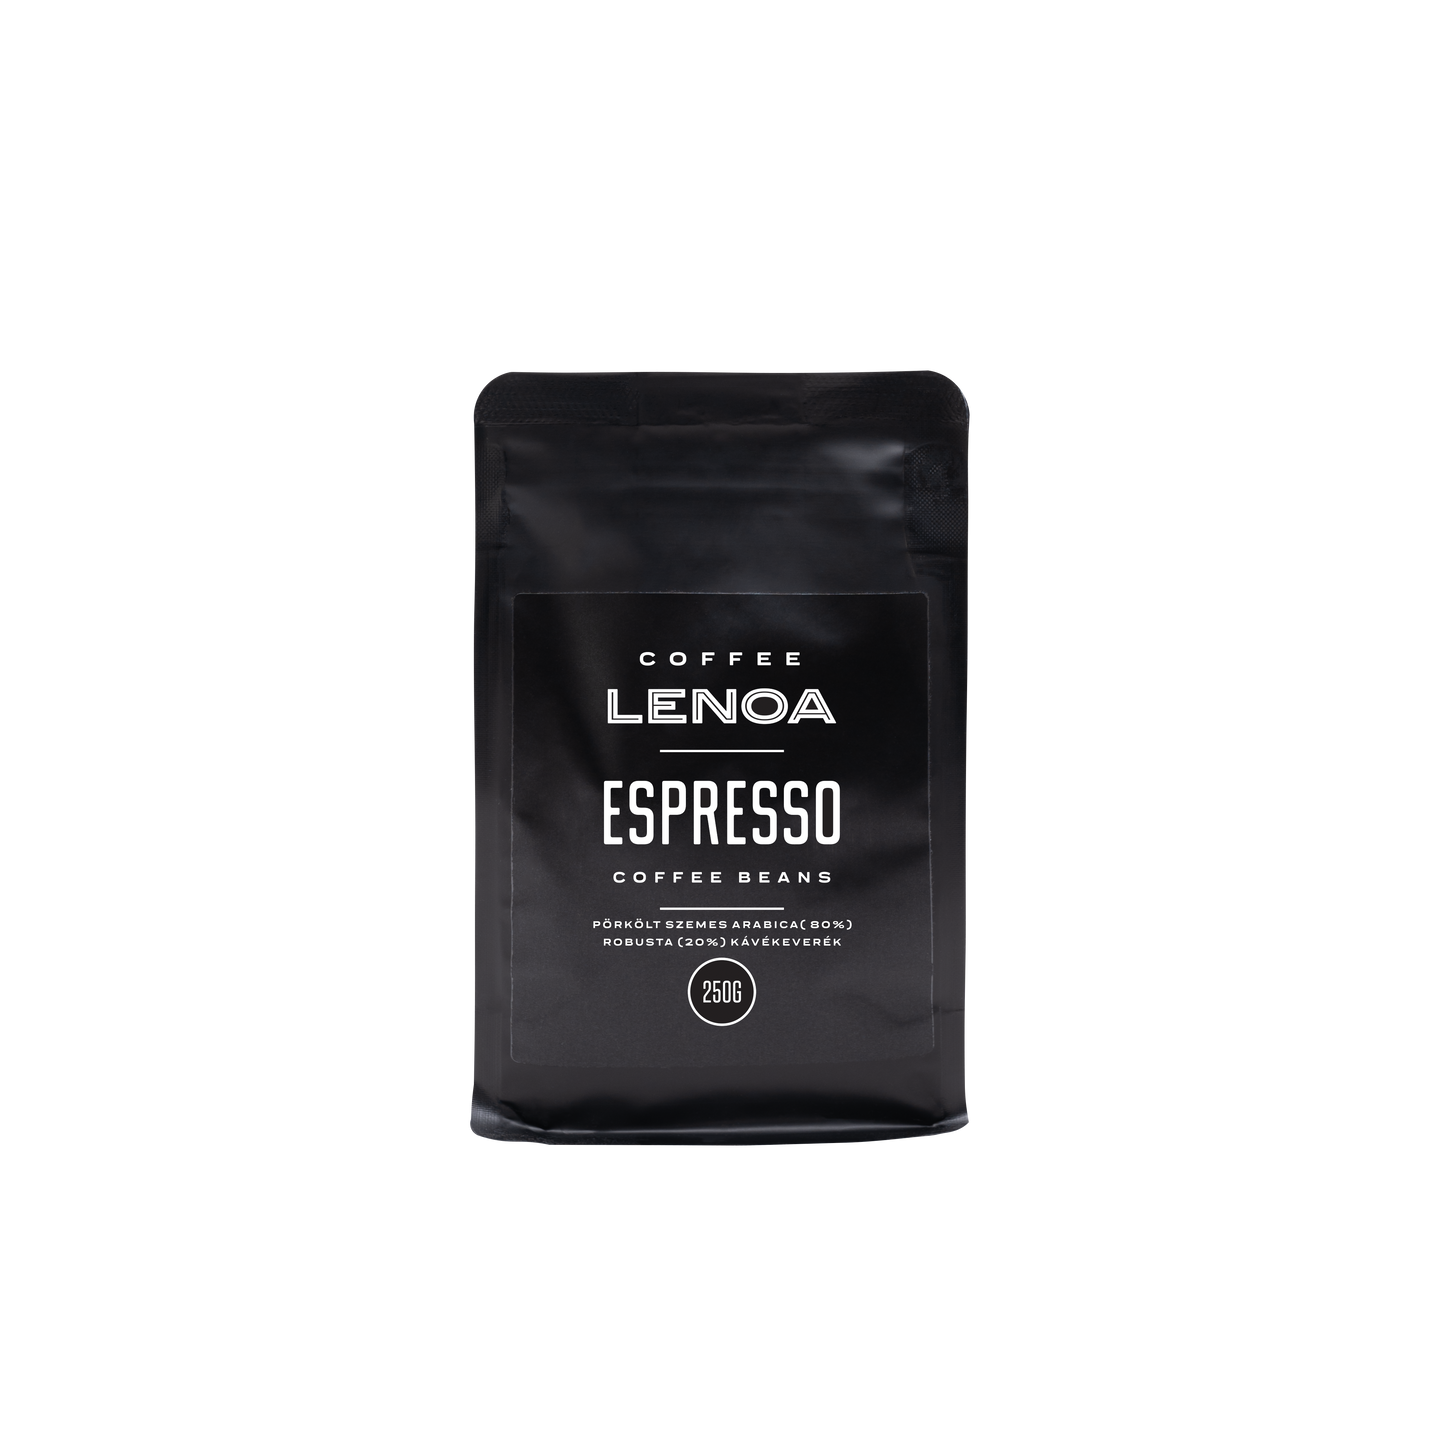 Coffee LENOA - ESPRESSO szemes kávé